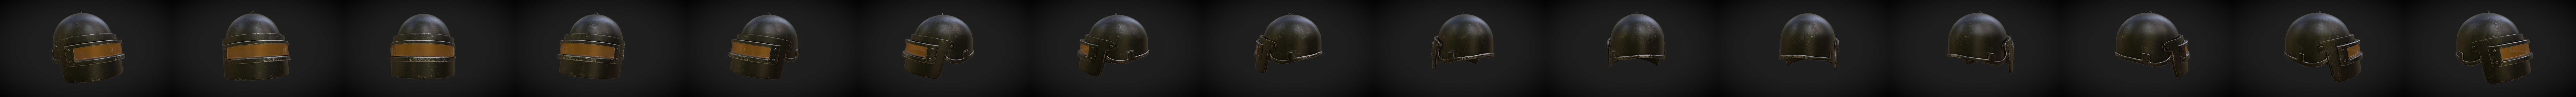 PUBG Level 3 Helmet - Download Free 3D model by NikolasAntonio  (@NikolasAntonio) [85dd813]